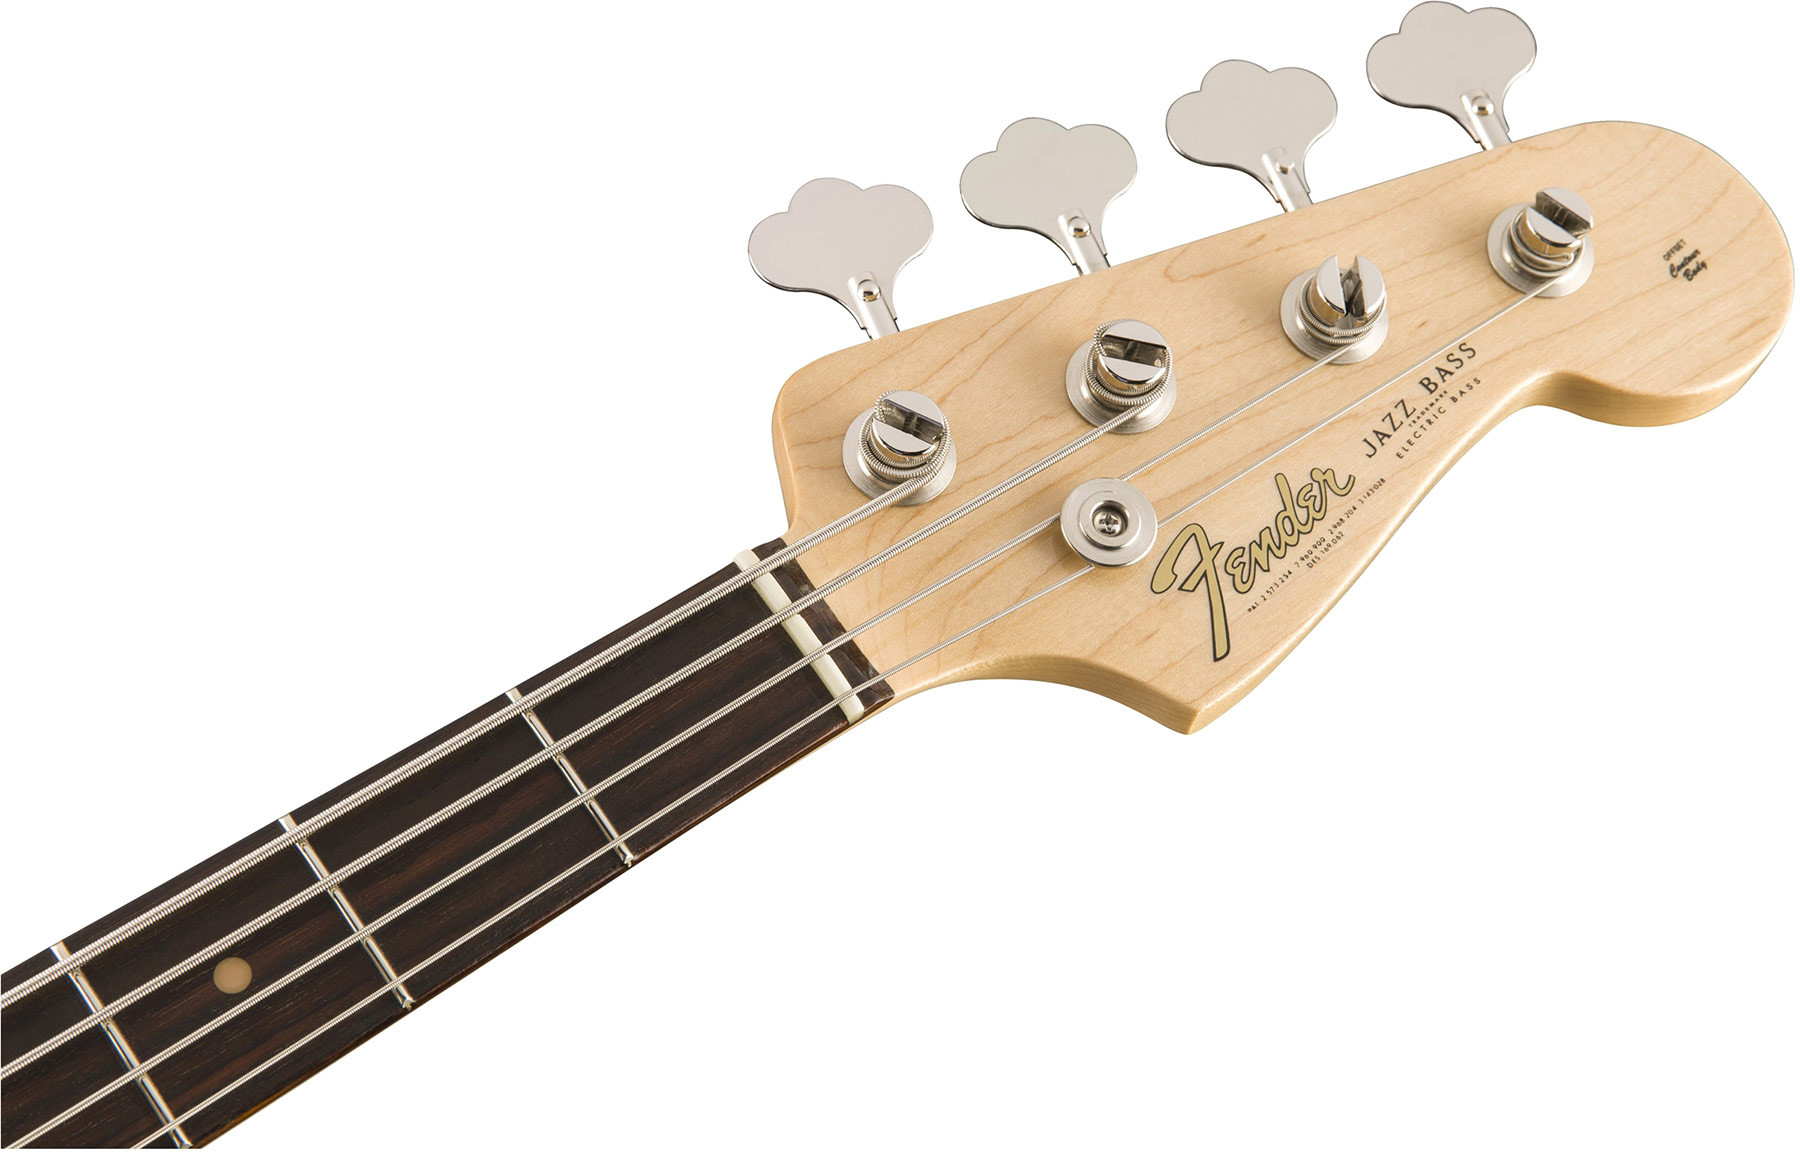 Fender Jazz Bass '60s American Original Usa Rw - 3-color Sunburst - Solidbody E-bass - Variation 3